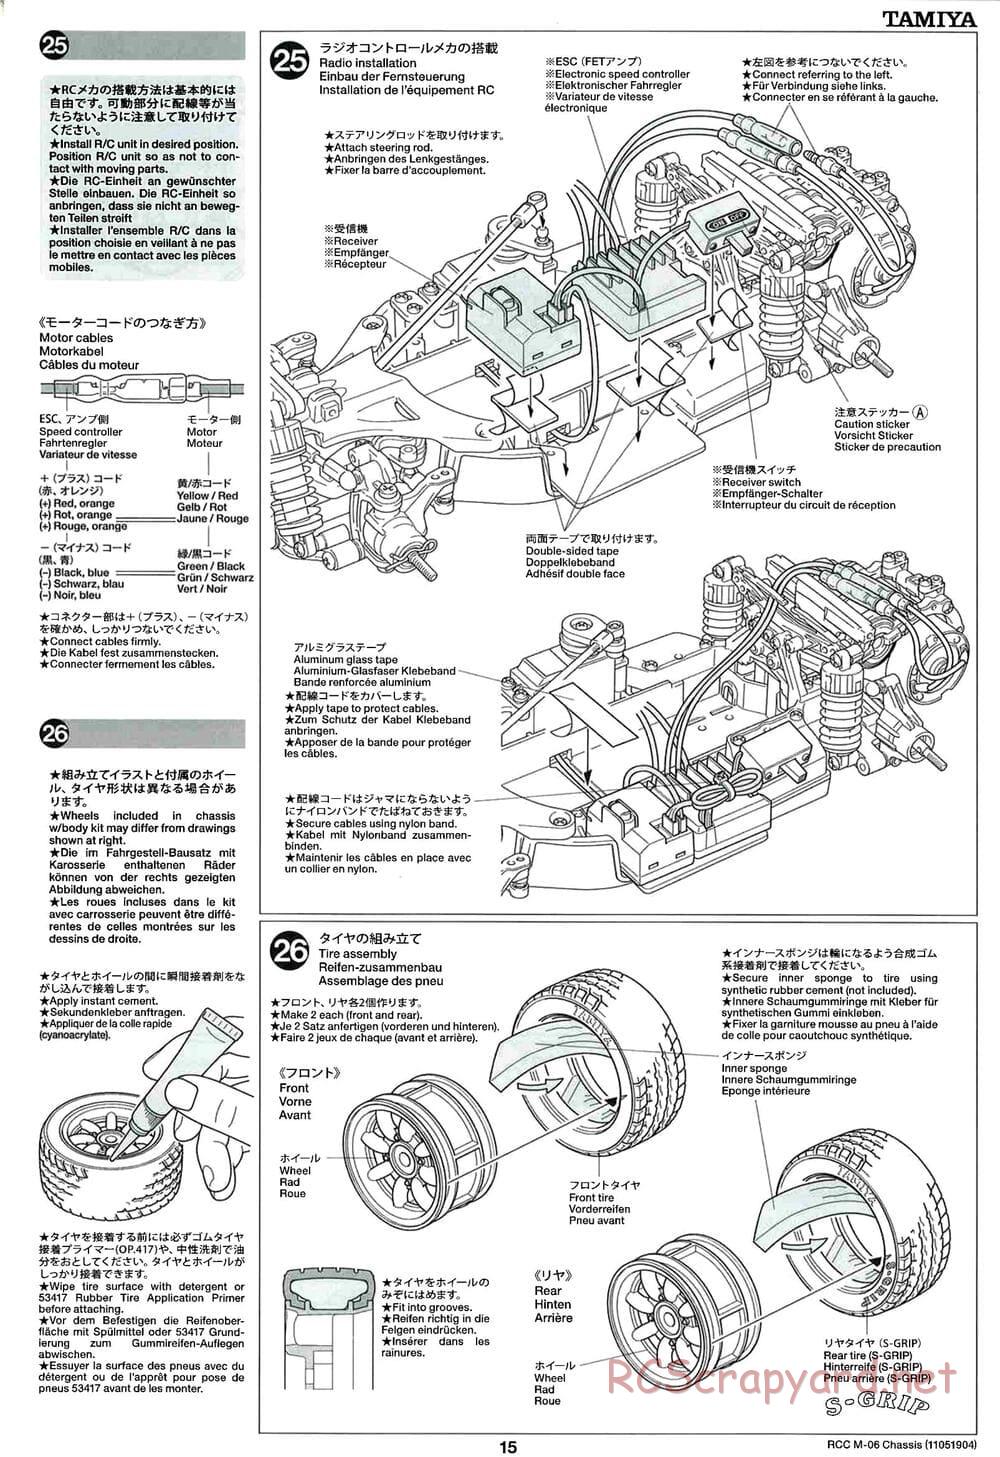 Tamiya - M-06 Chassis - Manual - Page 15